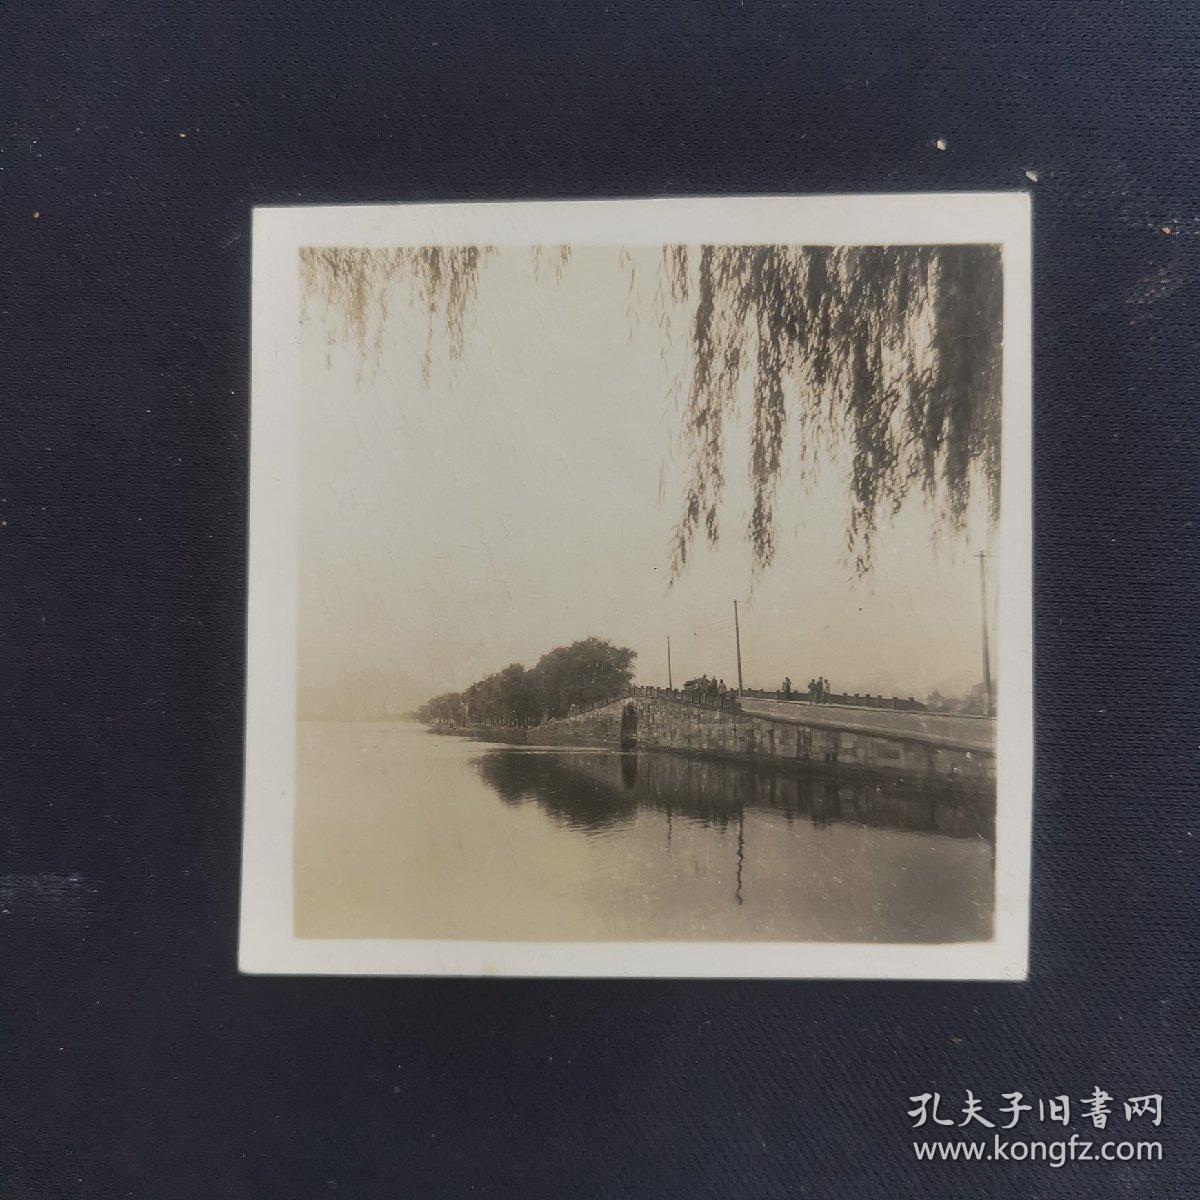 老照片专辑046：民国杭州西湖风景照七张，有白堤、断桥、岳飞墓等，尺寸约5.8*5，大小不一